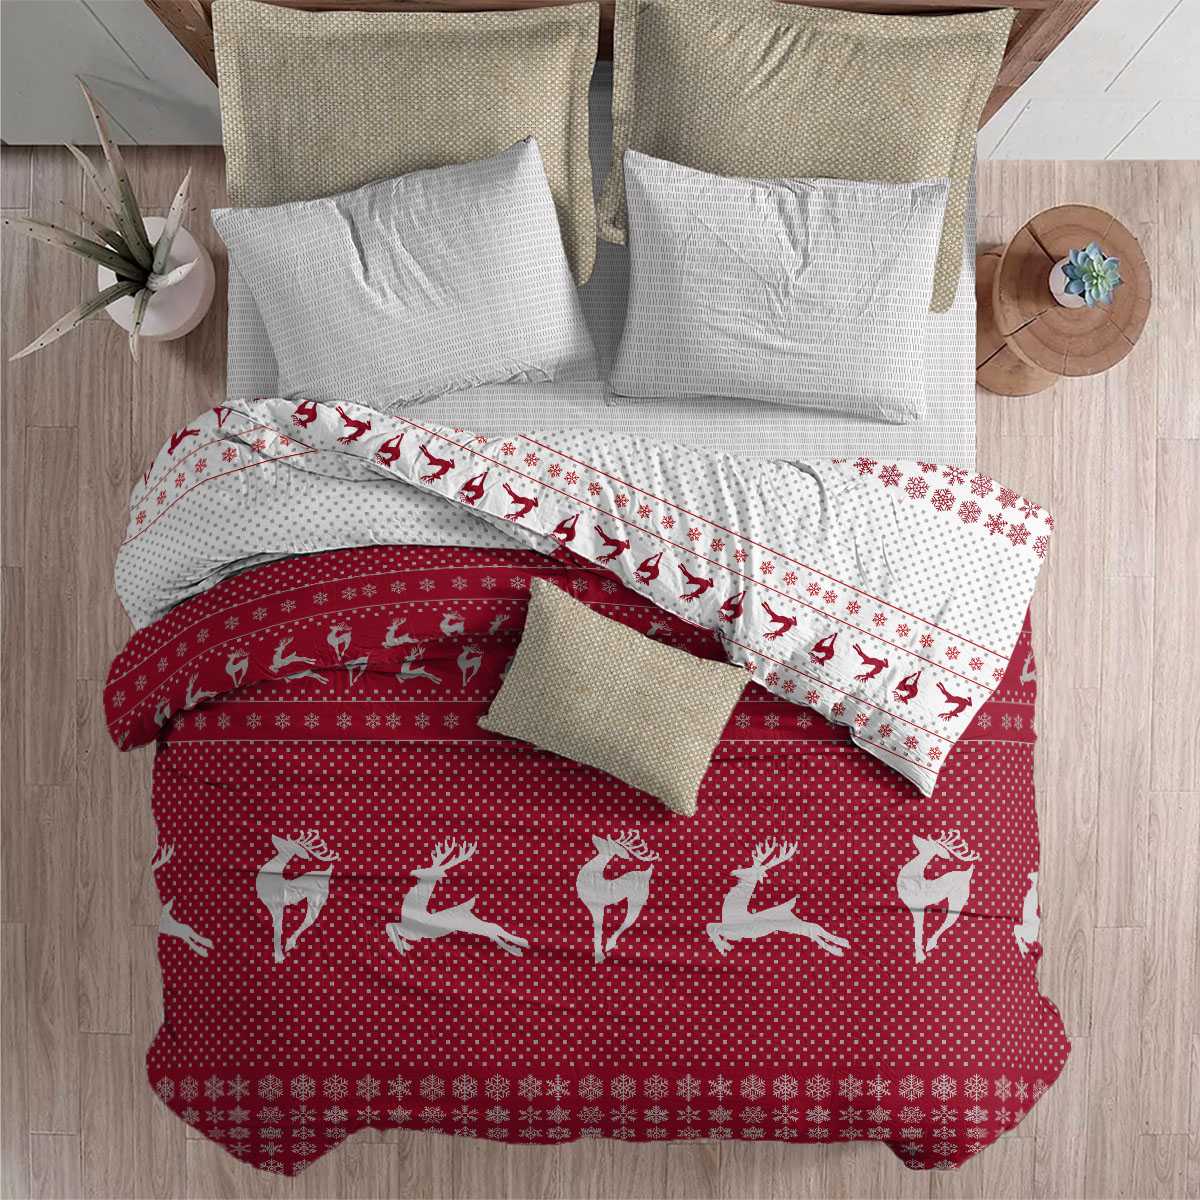 Комплект постельного белья Bravo Christmas 1.5 спальный наволочки 70х70 - фото 1